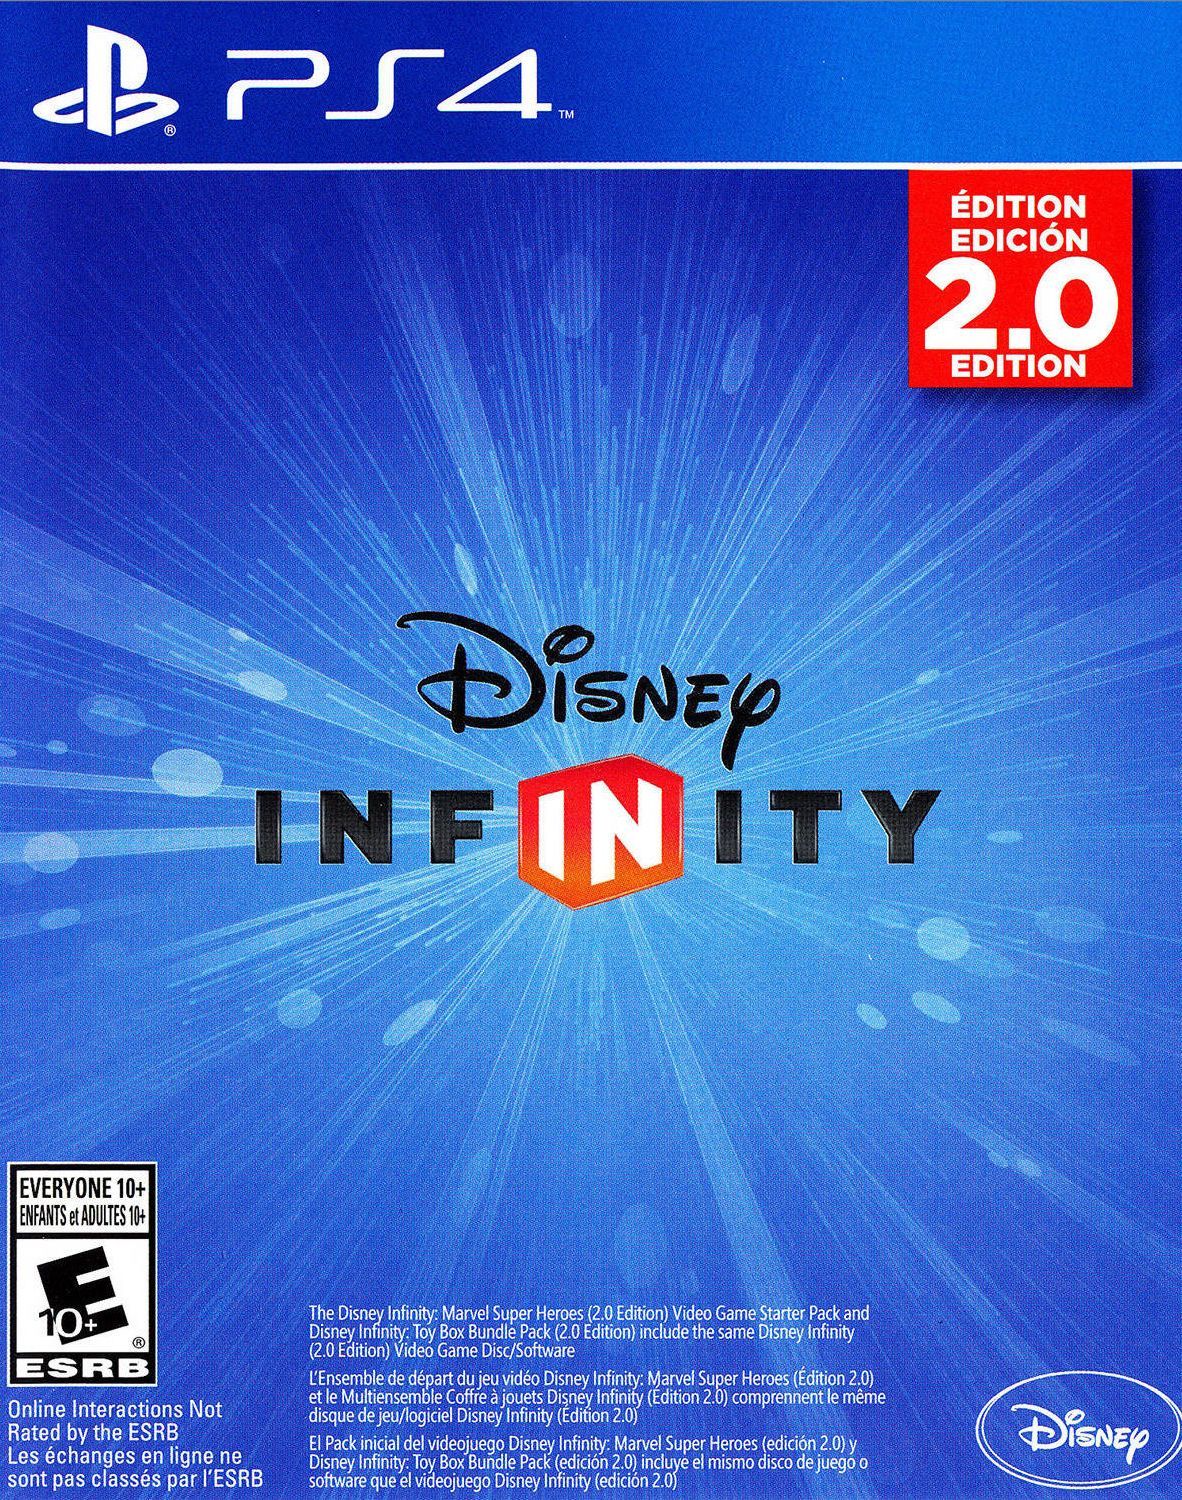 Disney infinity 2